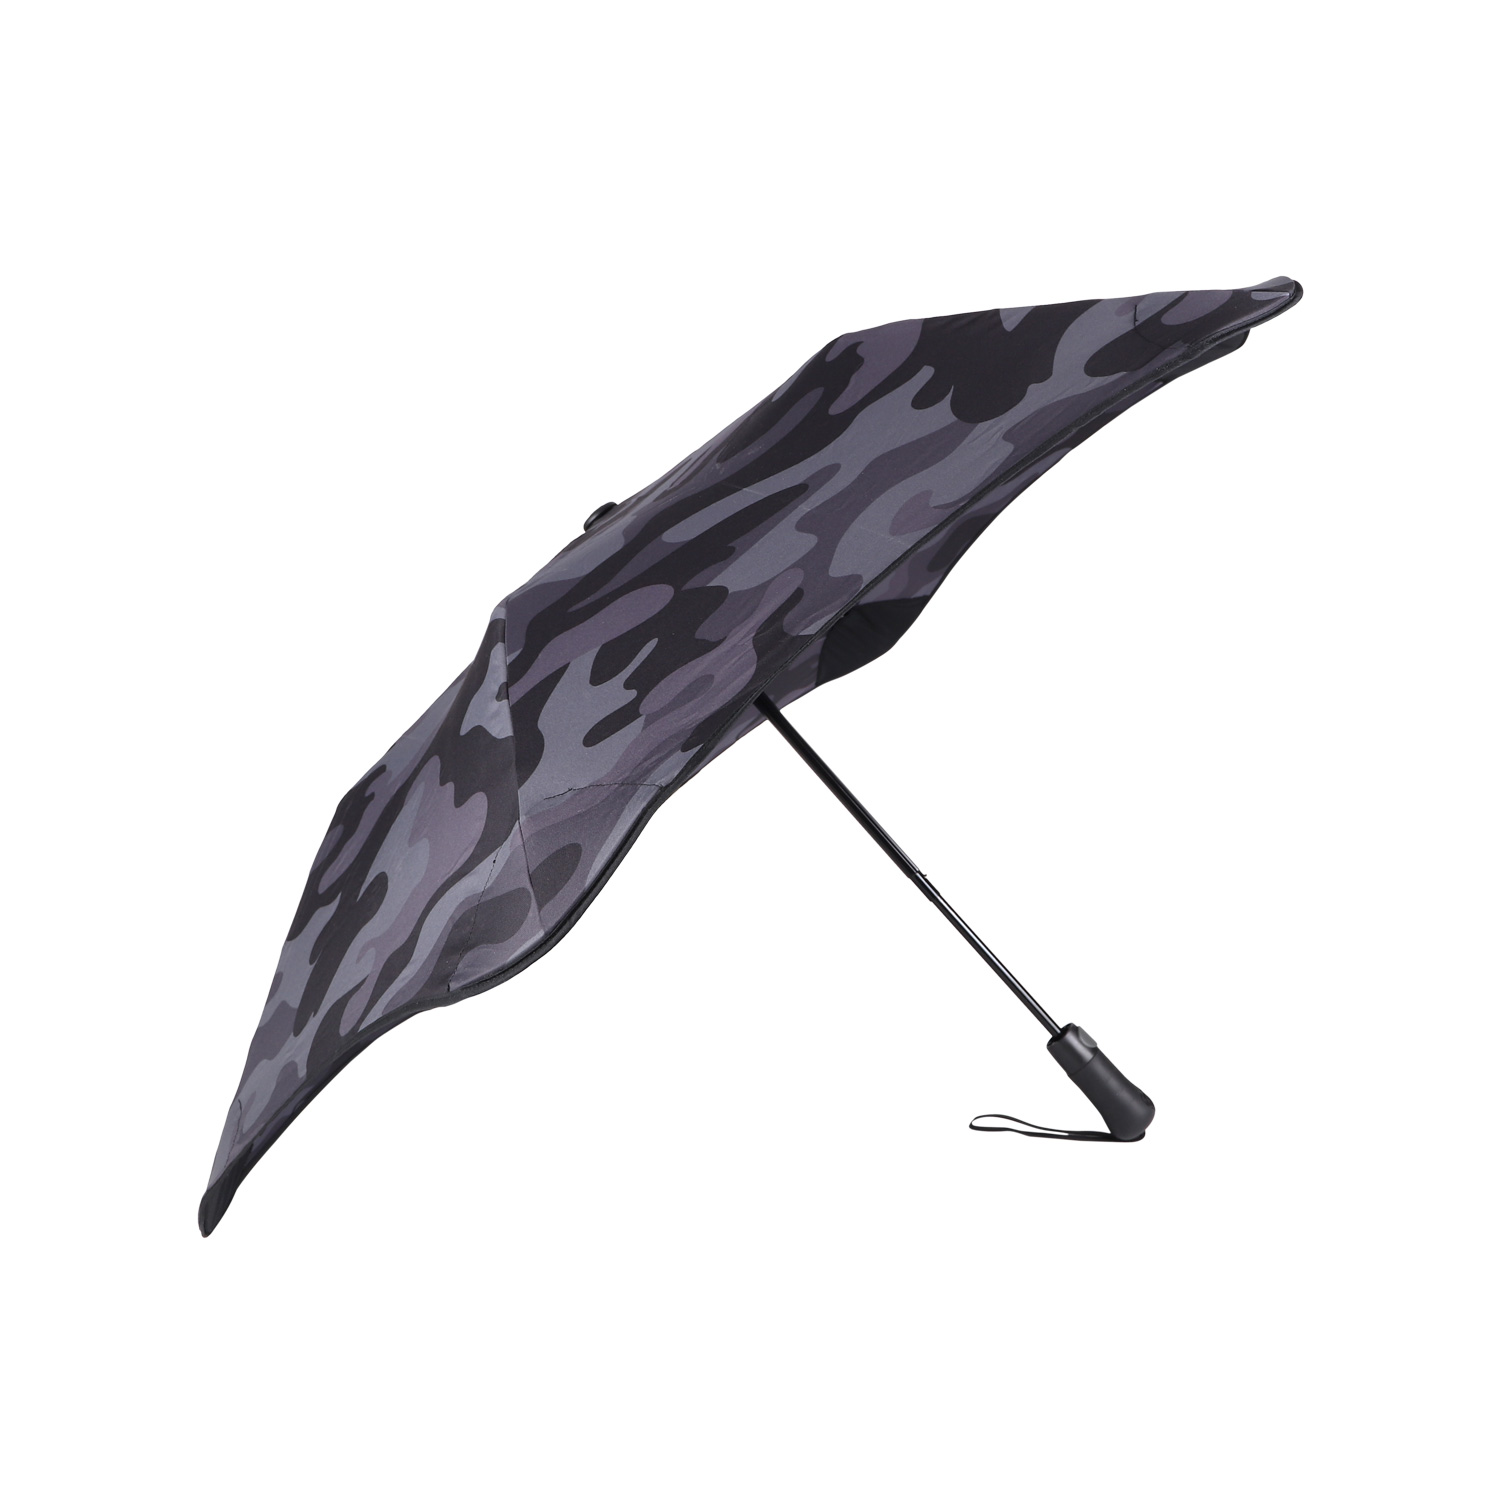 ブラント BLUNT 折りたたみ傘 雨傘 メトロ 2.0 メンズ レディース 55cm 軽量 自動開閉 耐風 折り畳み METRO 2.0 カモ 迷彩  母の日